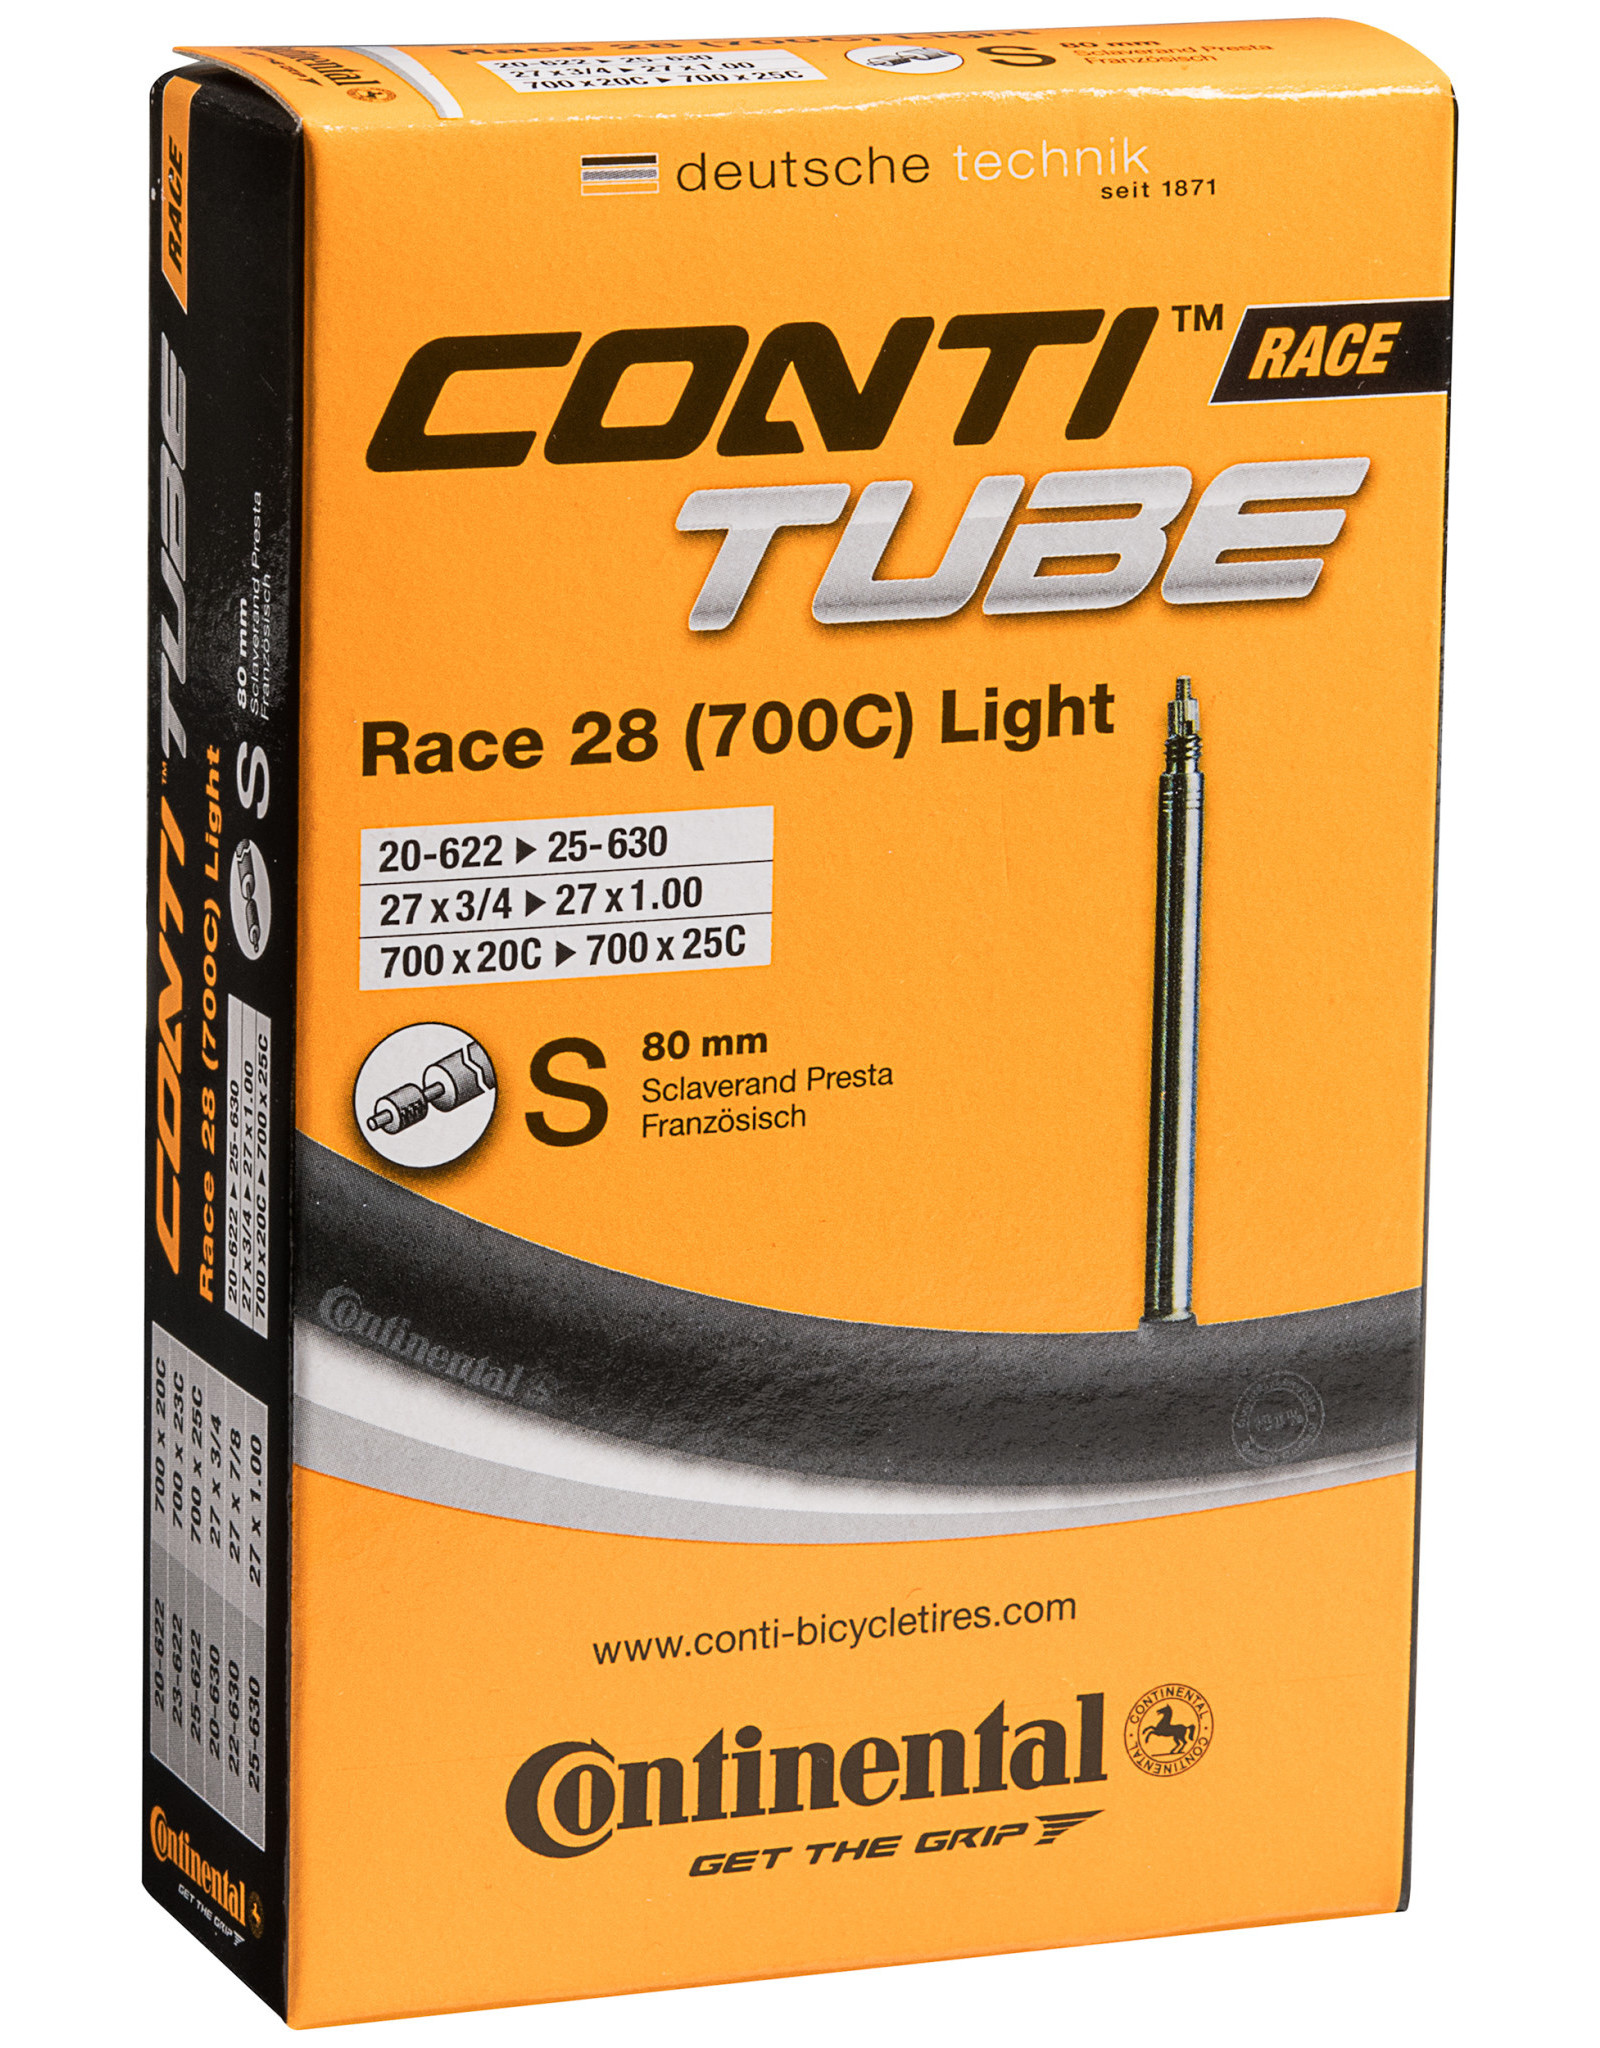 Continental CONTI, Tube, 700x20-25, Presta, 80mm, Light